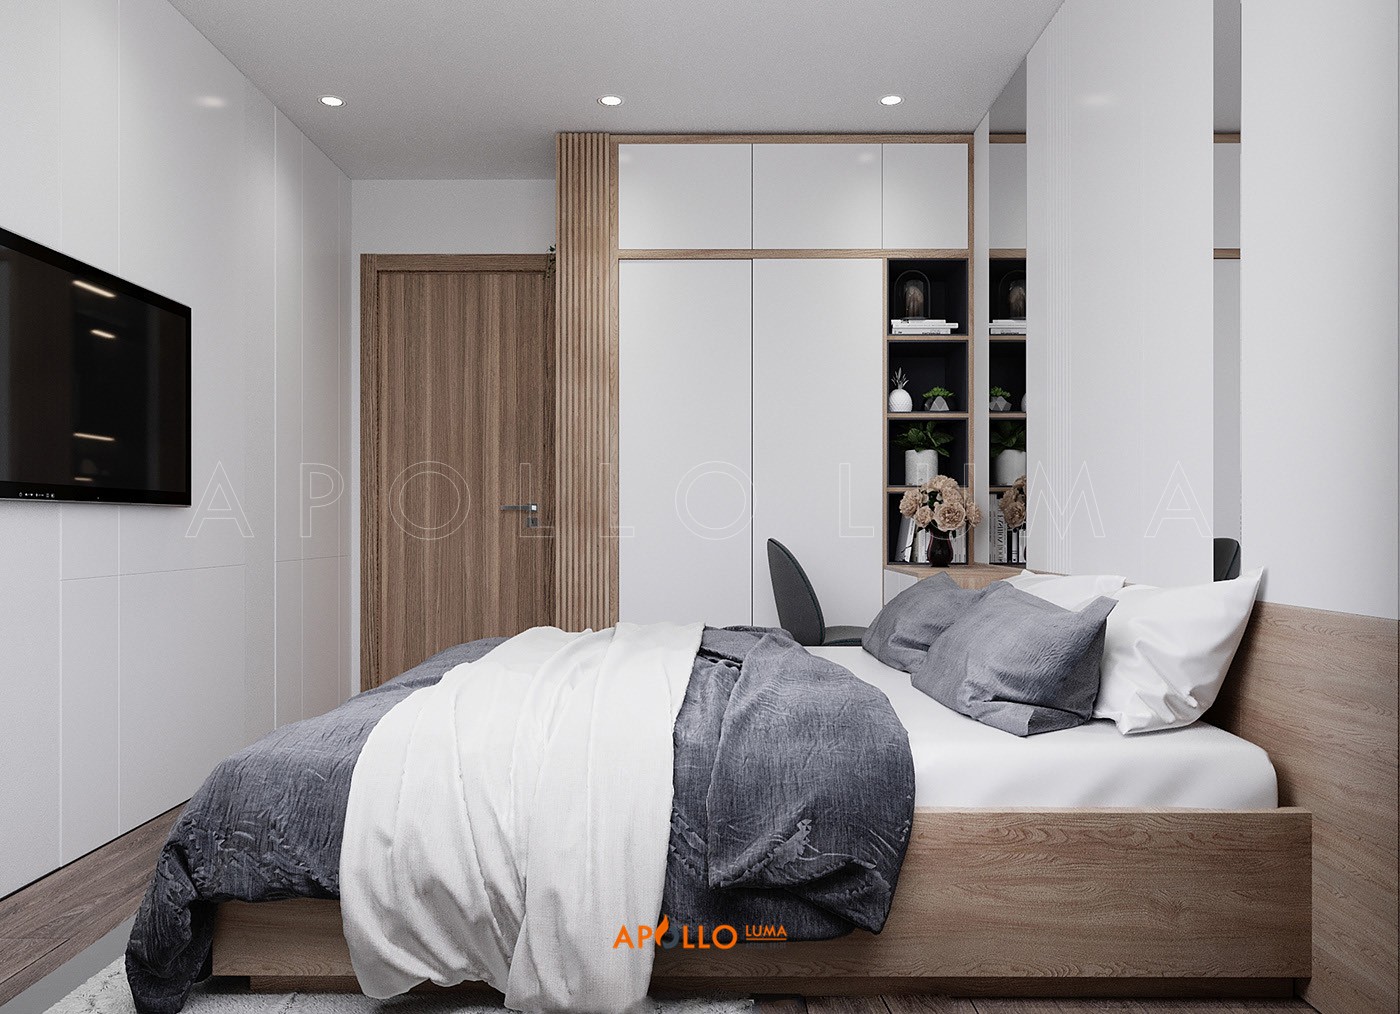 Thiết kế nội thất căn hộ 2 phòng ngủ Vinhomes Skylake Phạm Hùng